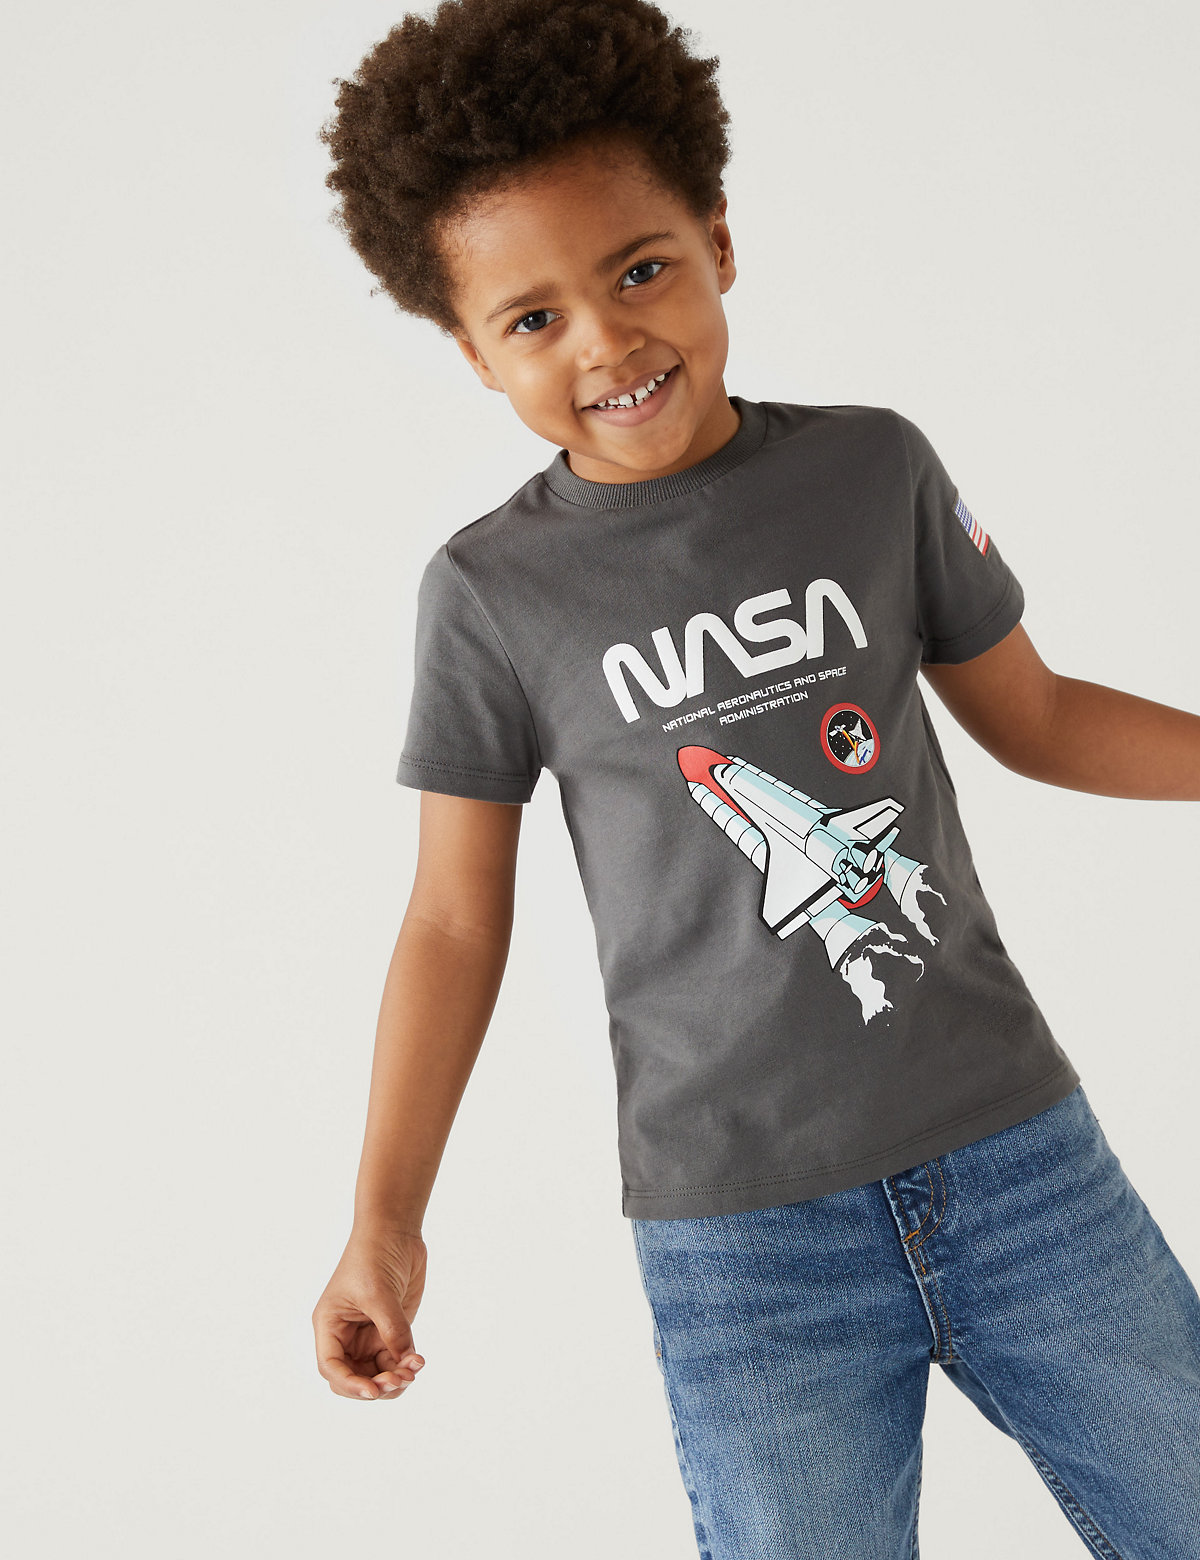 Pure Cotton NASA™ T-Shirt